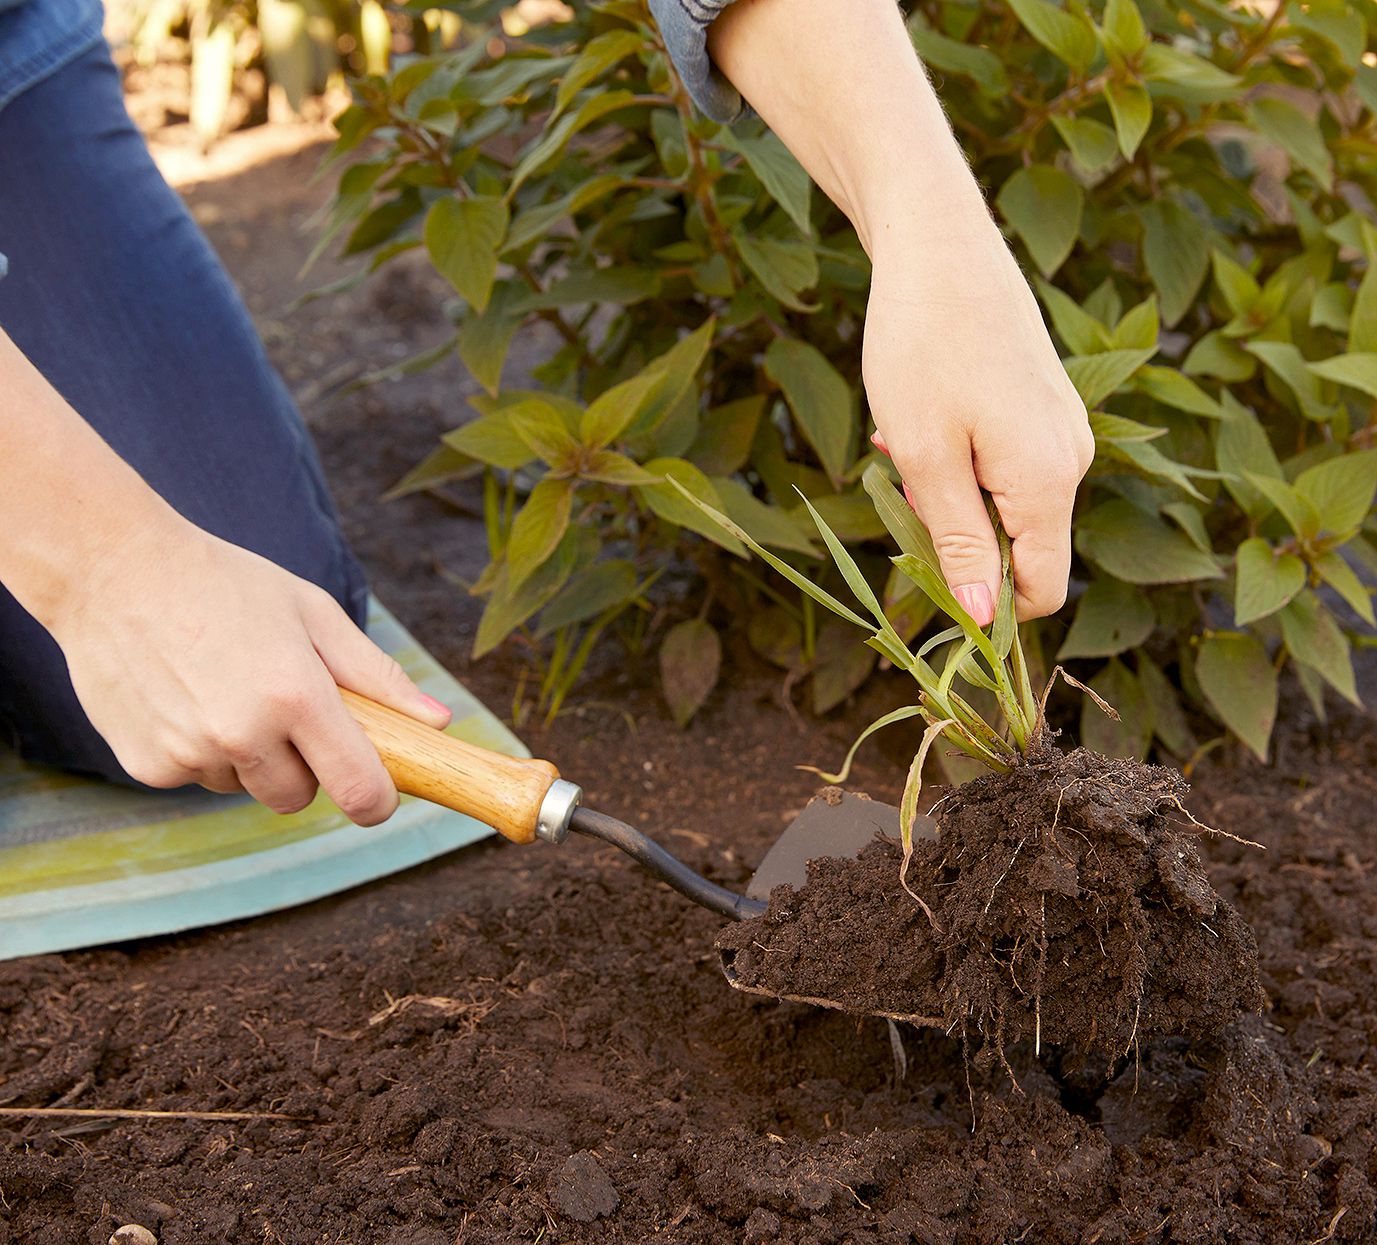 Xới đất hai lần: LÀM THẾ NÀO ĐỂ BẮT ĐẦU MỘT KHU VƯỜN CHUYÊN SÂU KIỂU PHÁP 1. ĐÀO ĐÔI Tỏi mọc trong đất (Tín dụng hình ảnh: Getty Images) Trước khi bắt đầu vườn rau hoặc vườn trái cây nhỏ của bạn, hãy bắt đầu bằng việc chuẩn bị đất. Dọn sạch cỏ dại và mảnh vụn, sau đó dùng tay đào để đất thoát nước tốt và thoáng khí. Christopher cho biết: “Phân được bón vào đất khoảng một tháng trước khi trồng, thường được thêm vào bằng cách đào kép – một kỹ thuật loại bỏ một lớp đất, sau đó làm thoáng khí lớp đất bên dưới bằng một cây chĩa”. ‘Đất sau đó được trộn đều và trả lại (nếu đào nhiều hàng thì hàng sau dùng để lấp mặt hàng trước sau khi sục khí).’